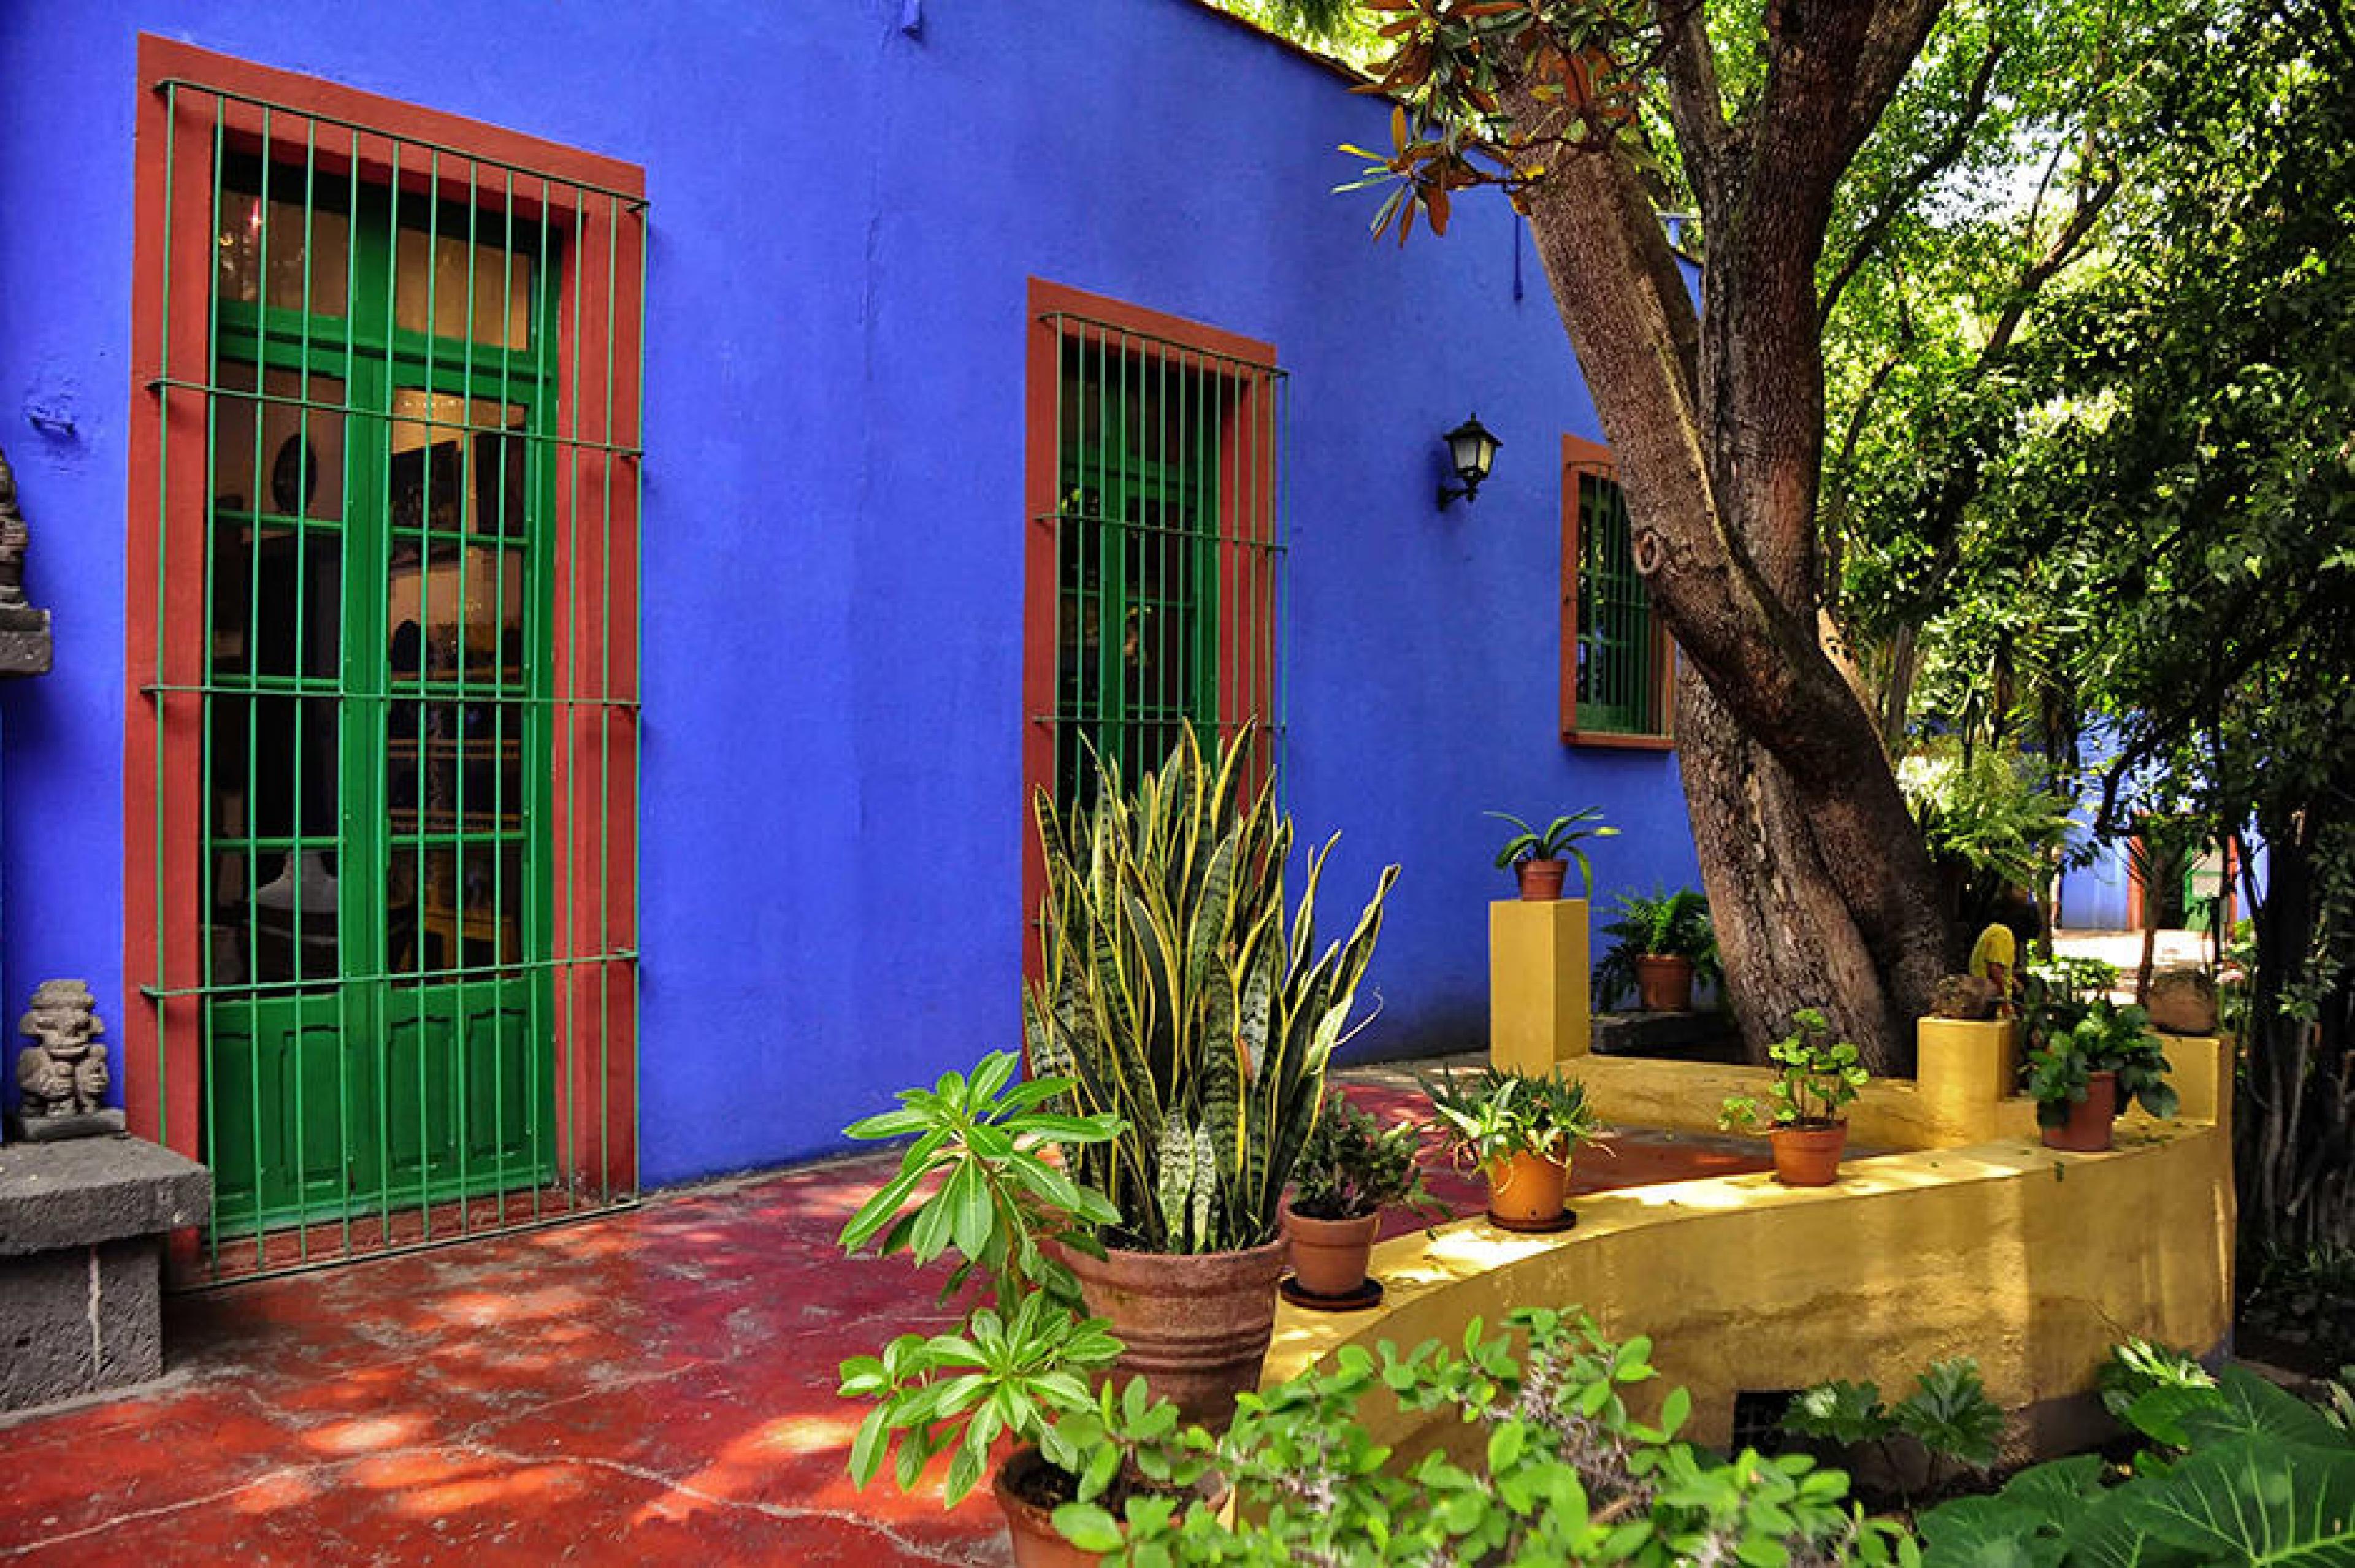 Exterior View - Frida Kahlo Museum, Mexico City, Mexico - Courtesy Rod Waddington